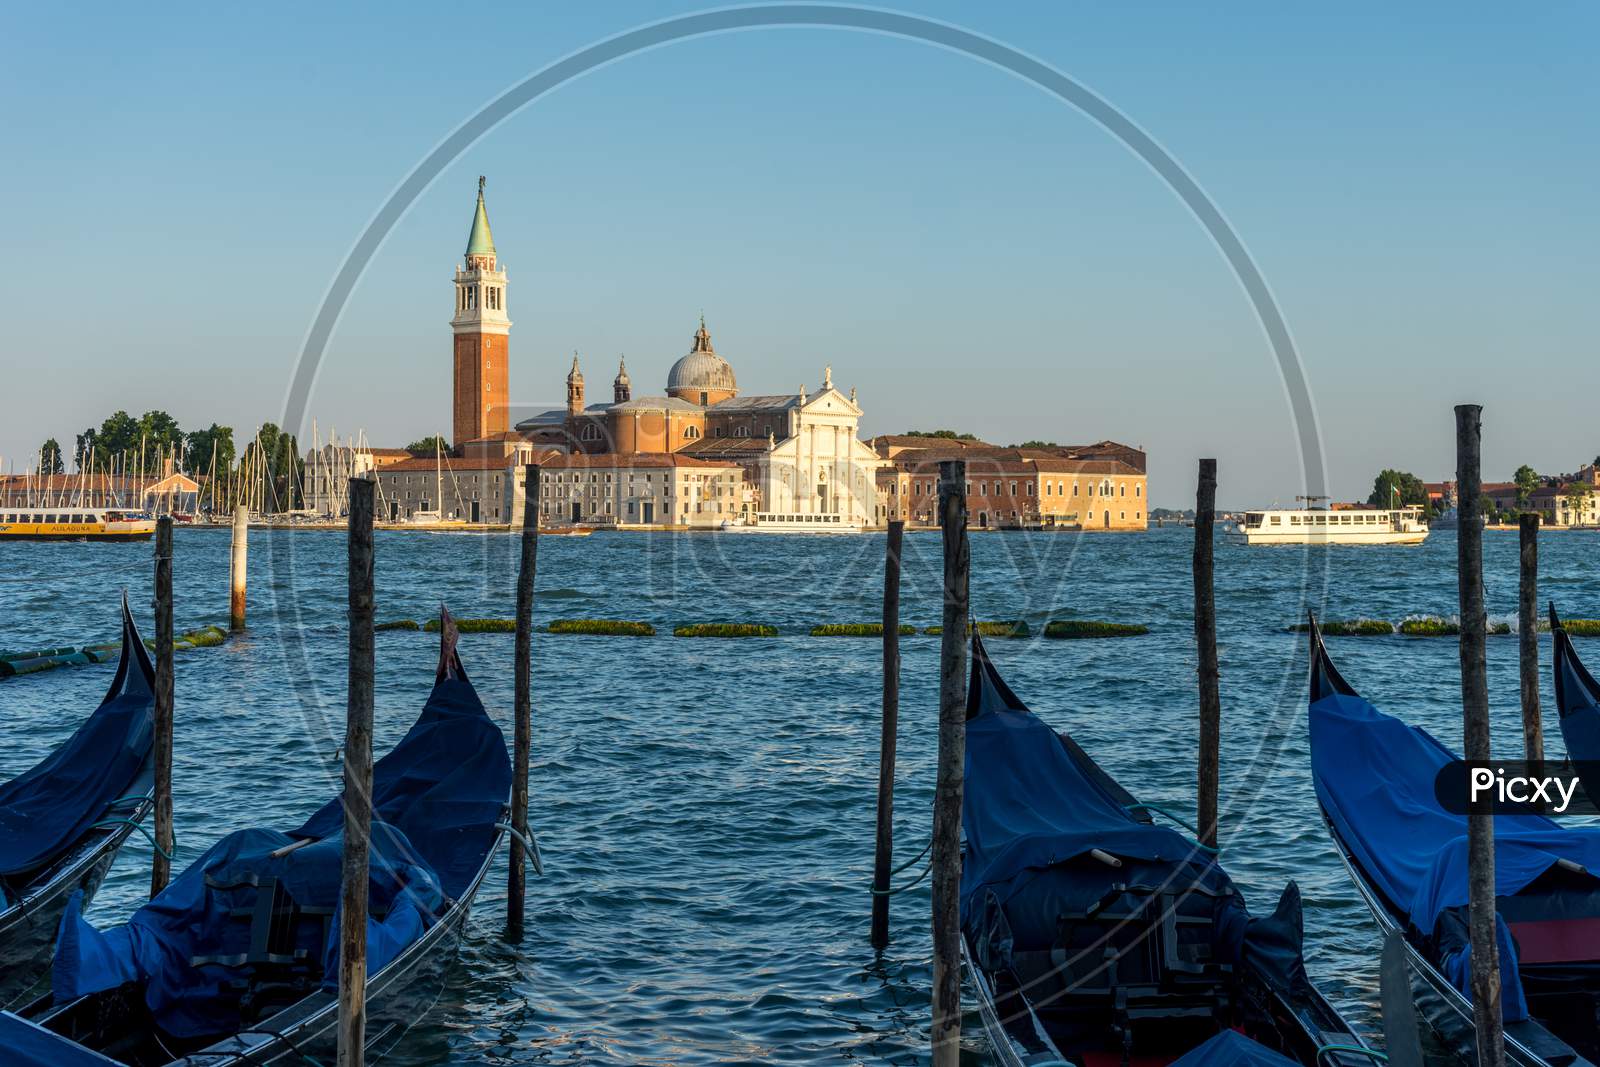 Venice, Italy - 30 June 2018: Gondolas Moored By Saint Mark Square With San Giorgio Di Maggiore Church In The Background In Venice, Italy